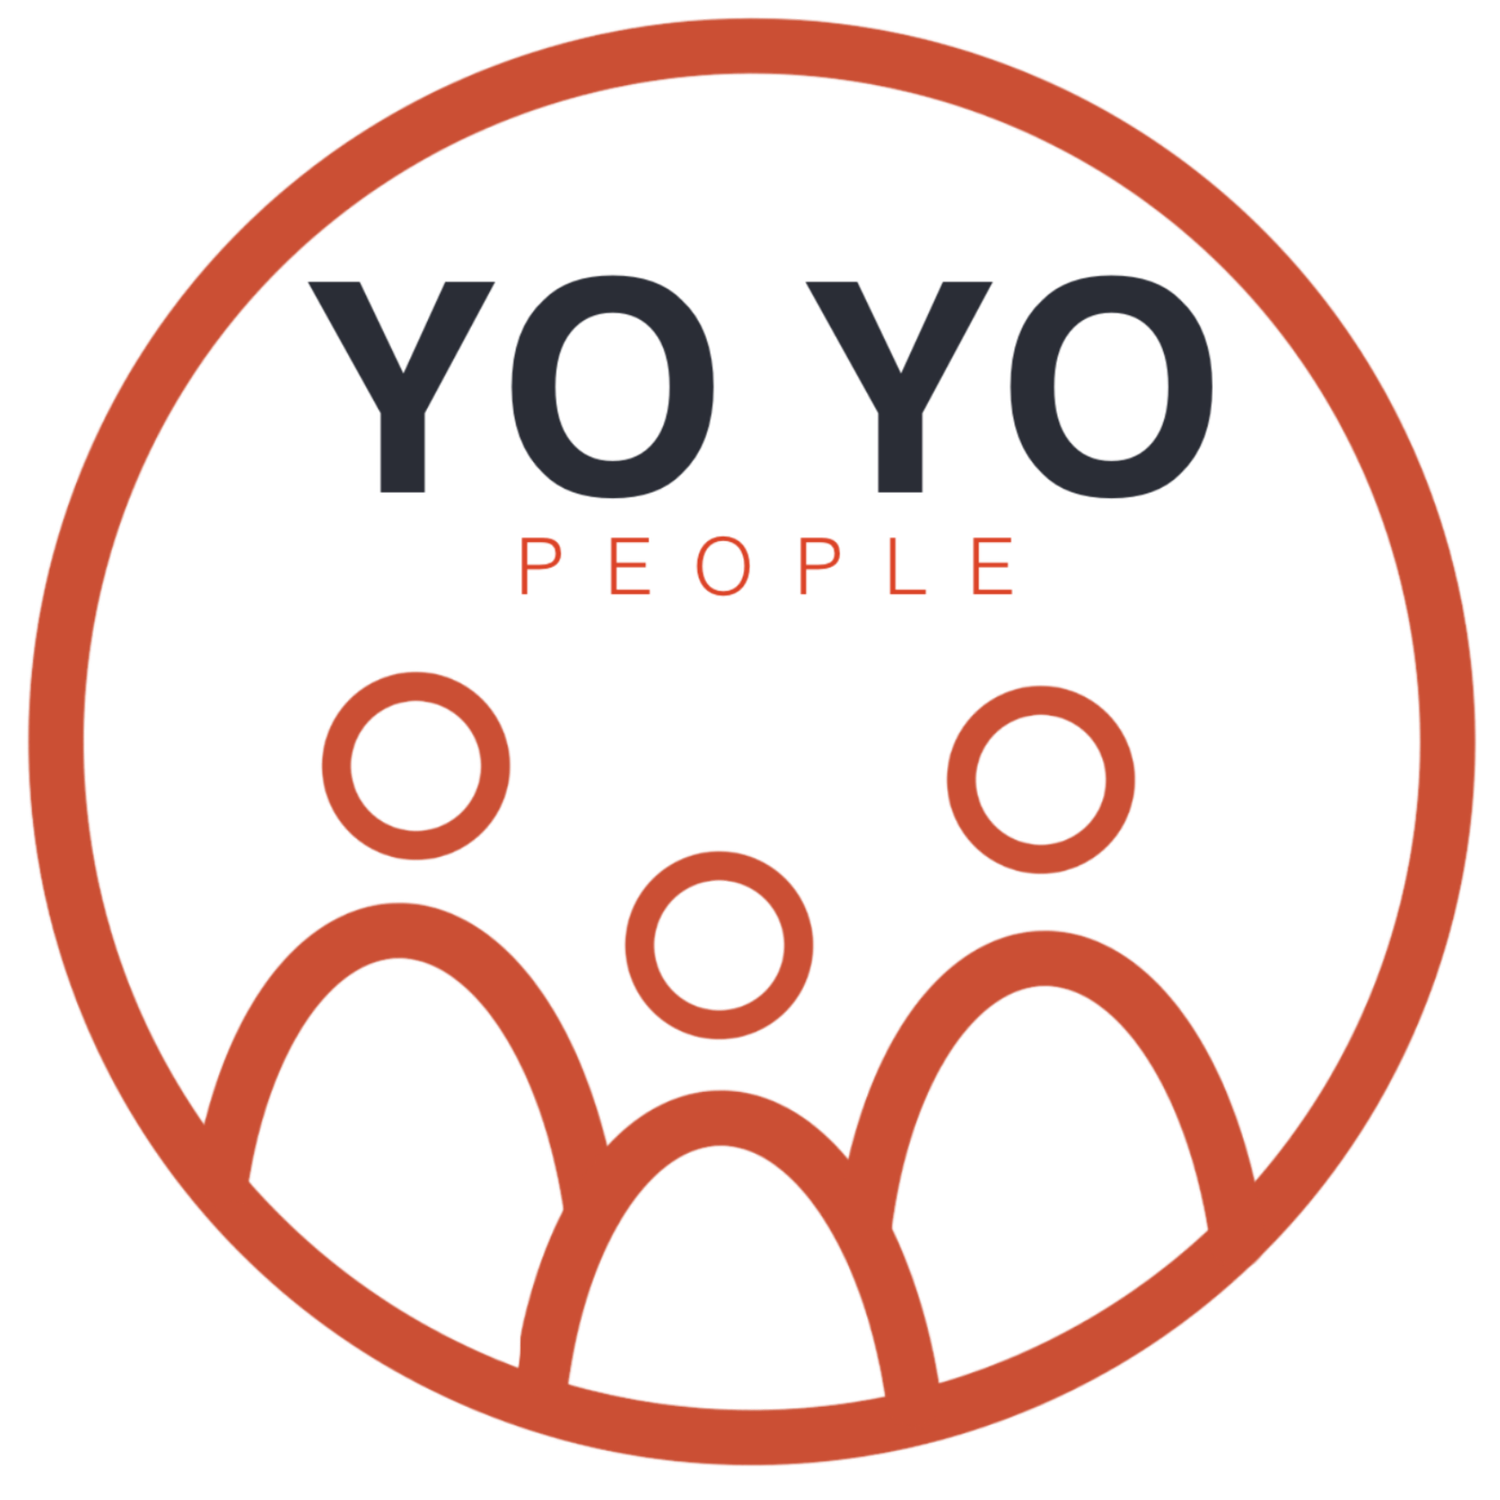 yoyopeople.co.uk